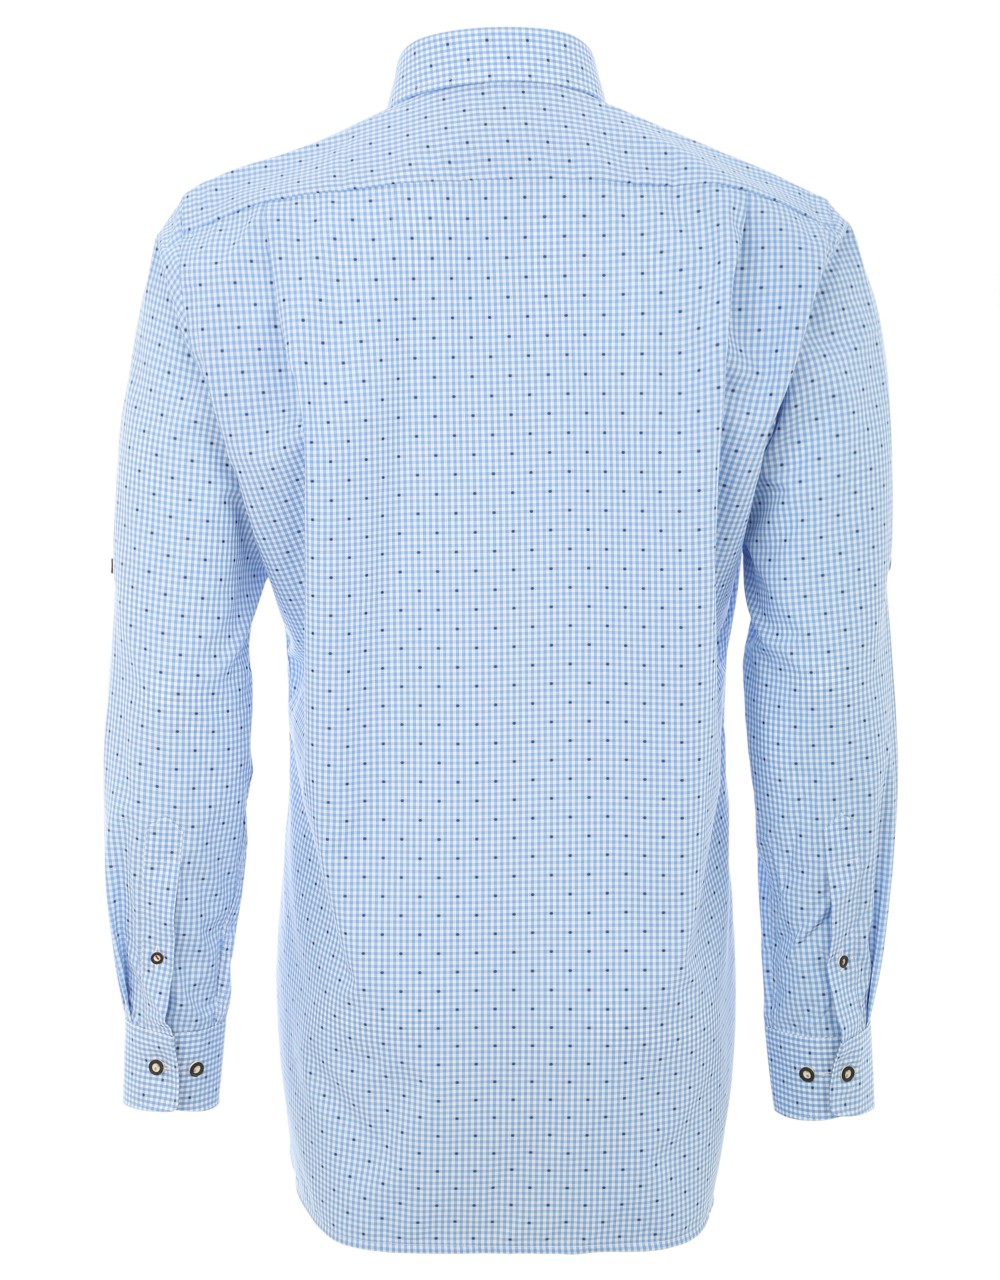 Vorschau: Trachten Shirt Olymp, blue-white checked